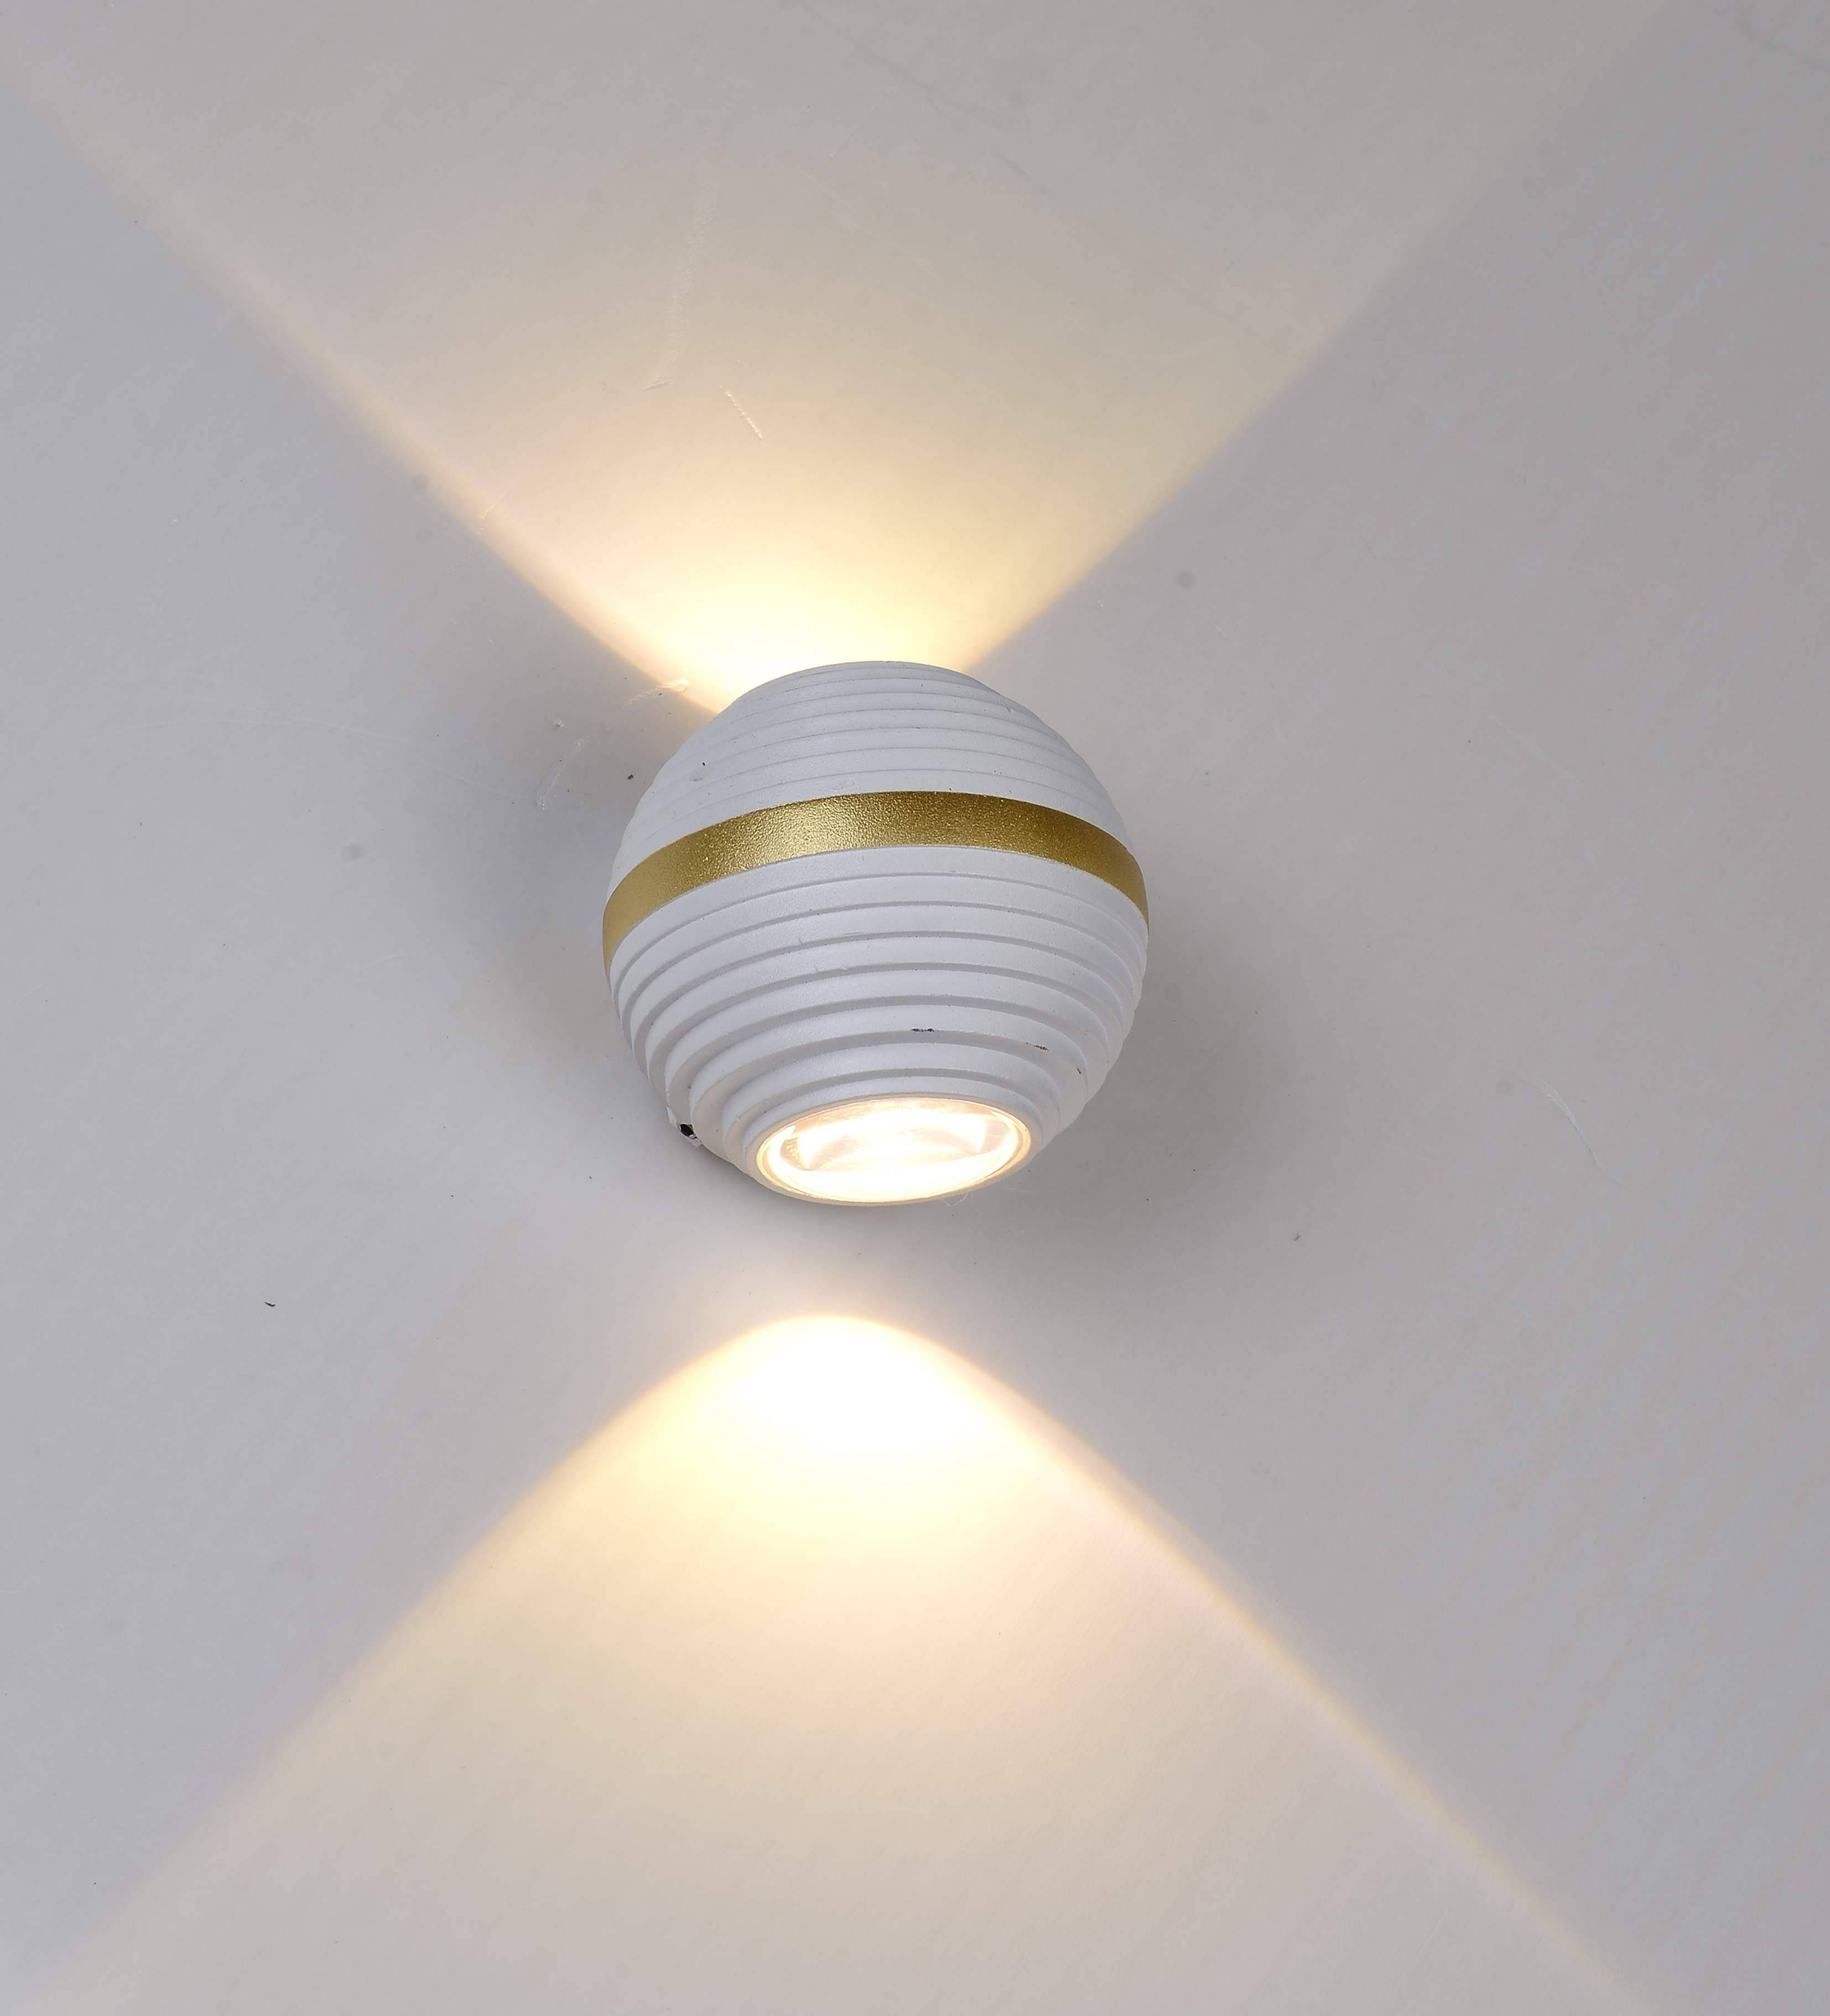 LED壁灯